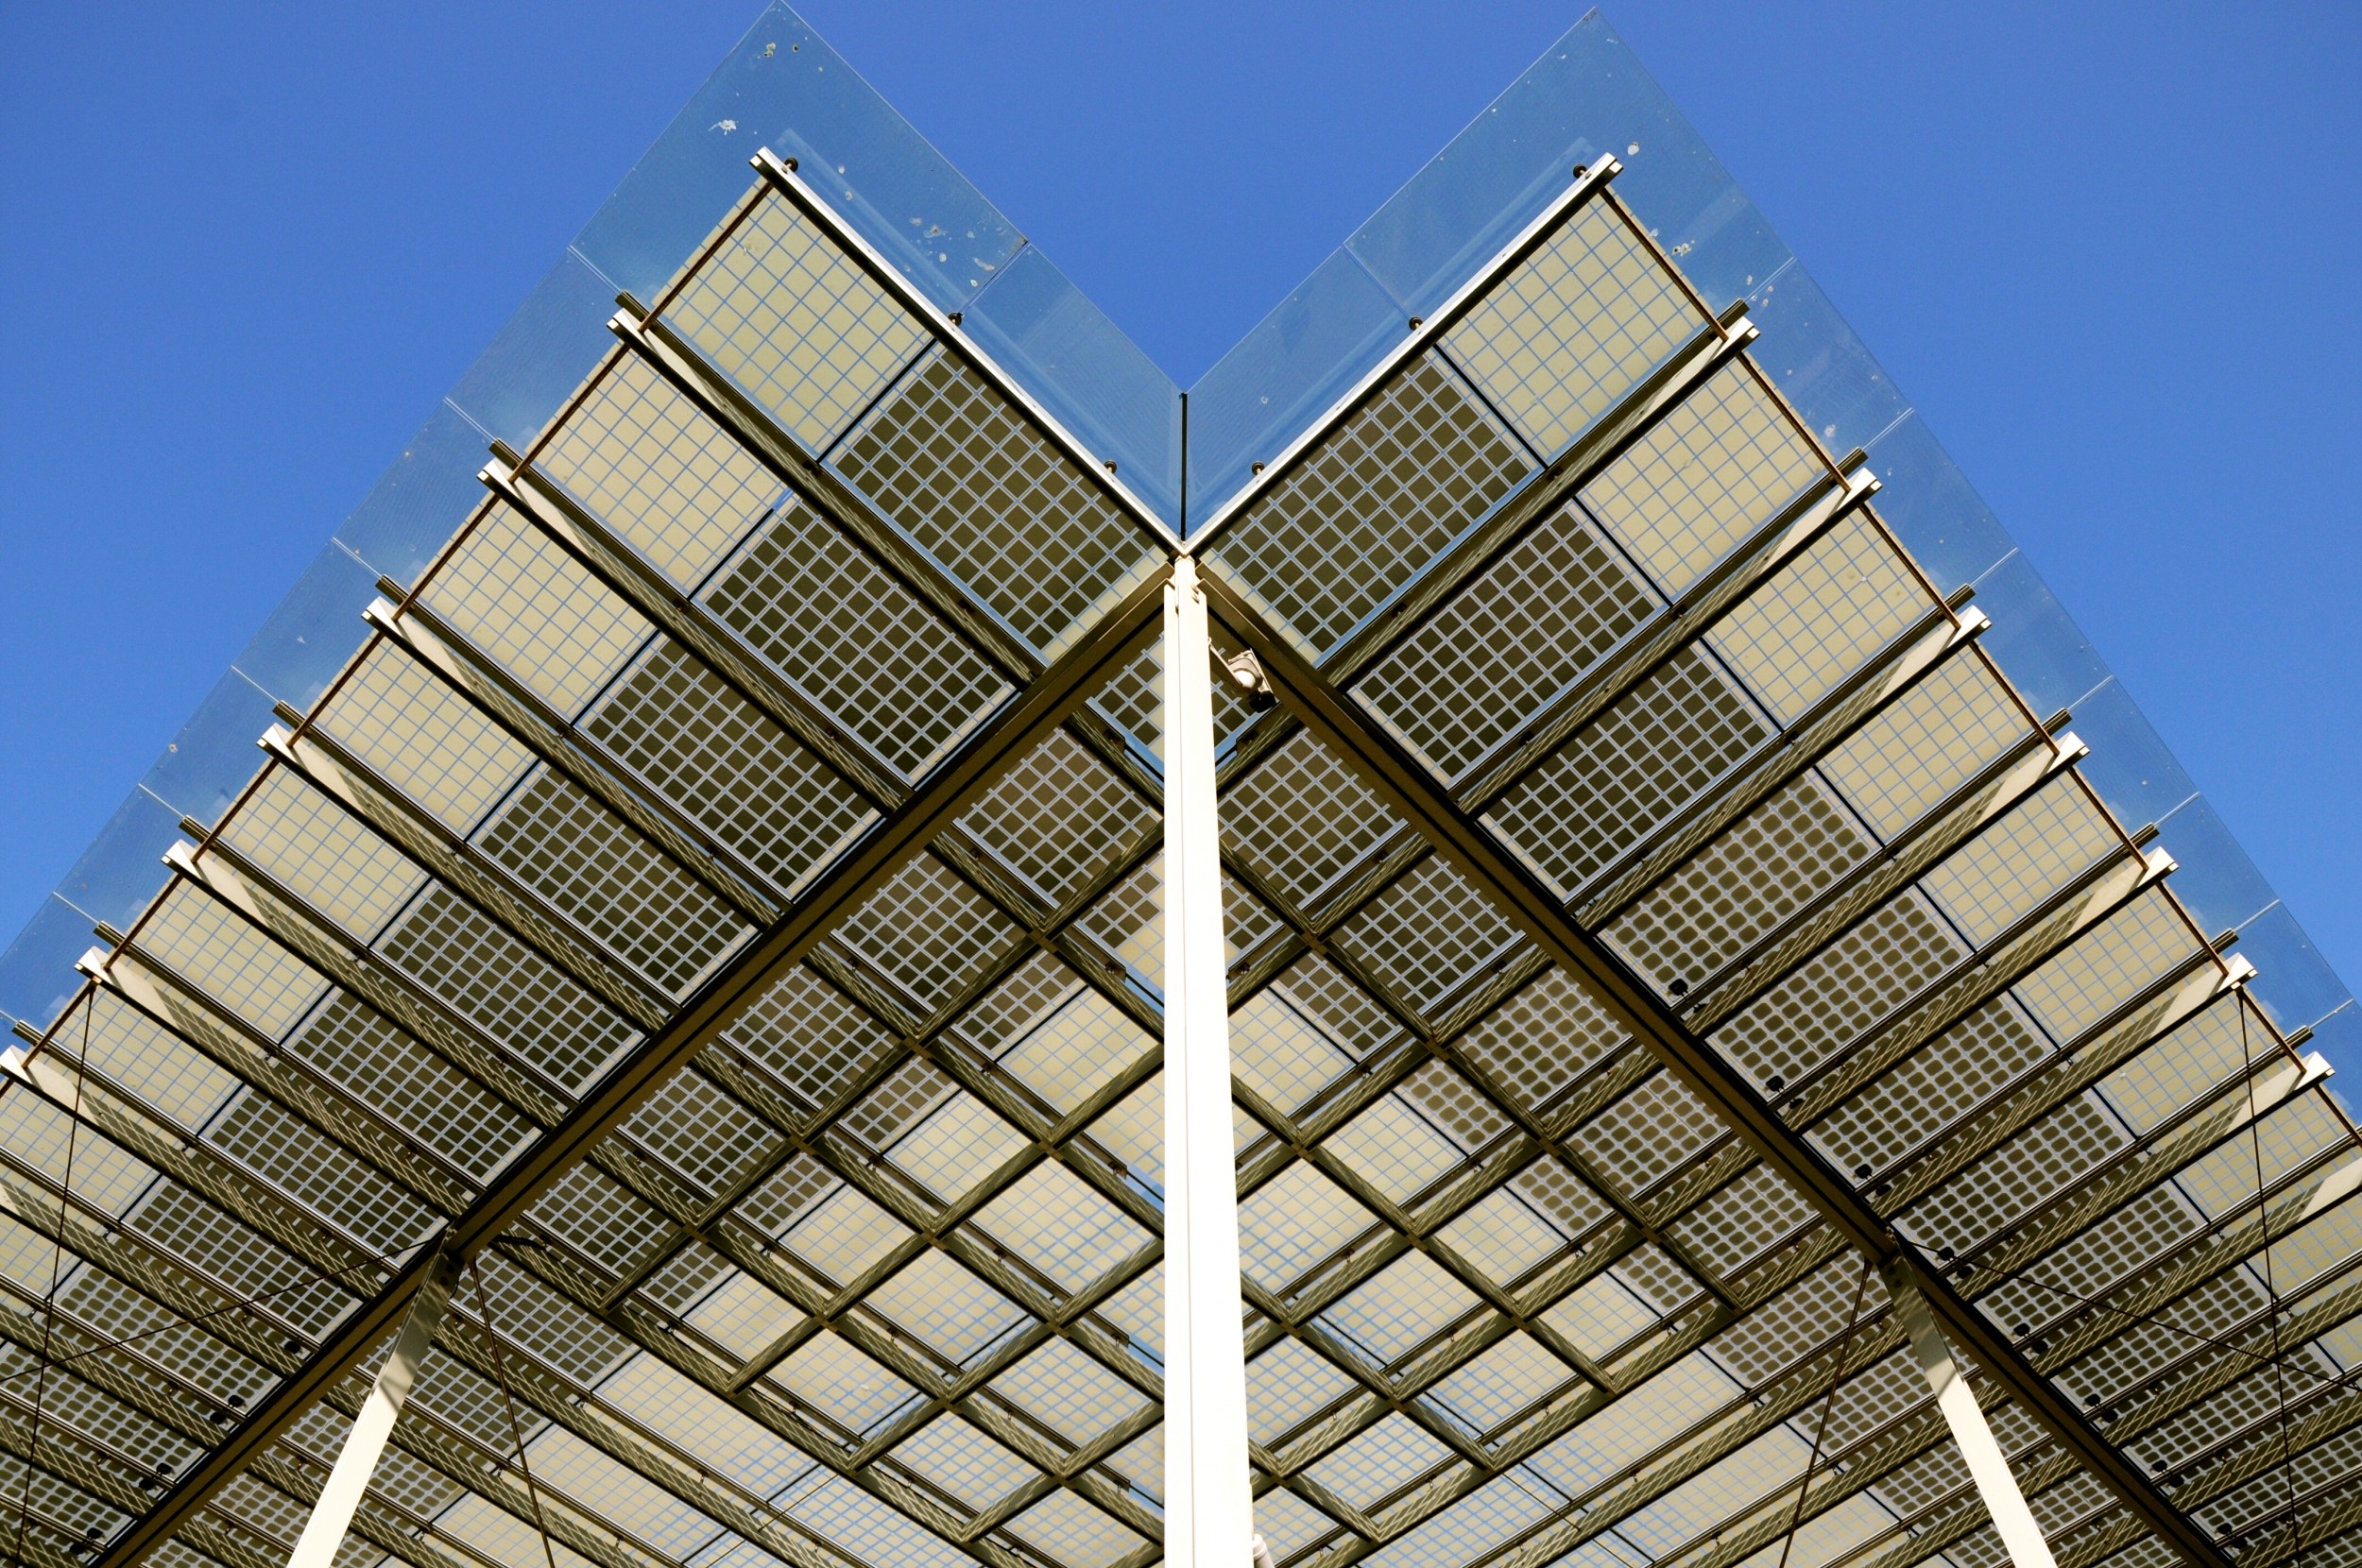 Les cellules solaires intégrées directement dans l'enveloppe d’un bâtiment offrent de nouvelles possibilités architecturales.